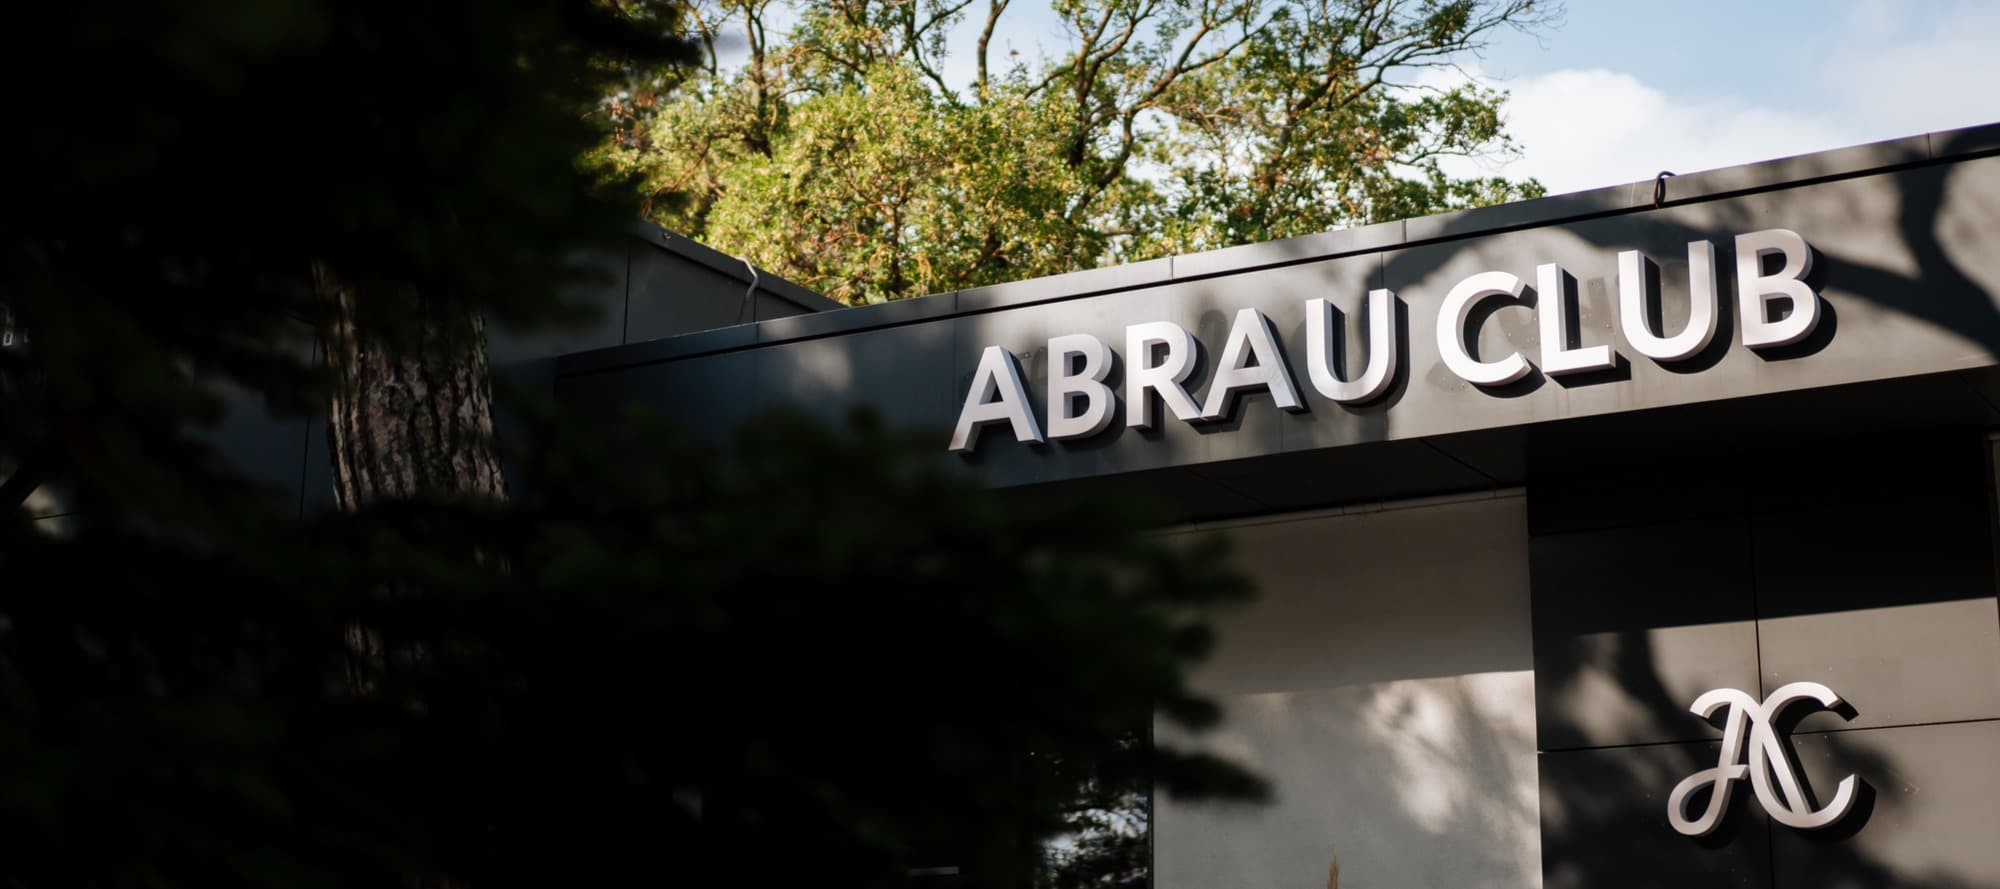 Фото новости: "«Абрау-Дюрсо» открыл второй бутик с товарами для дома"